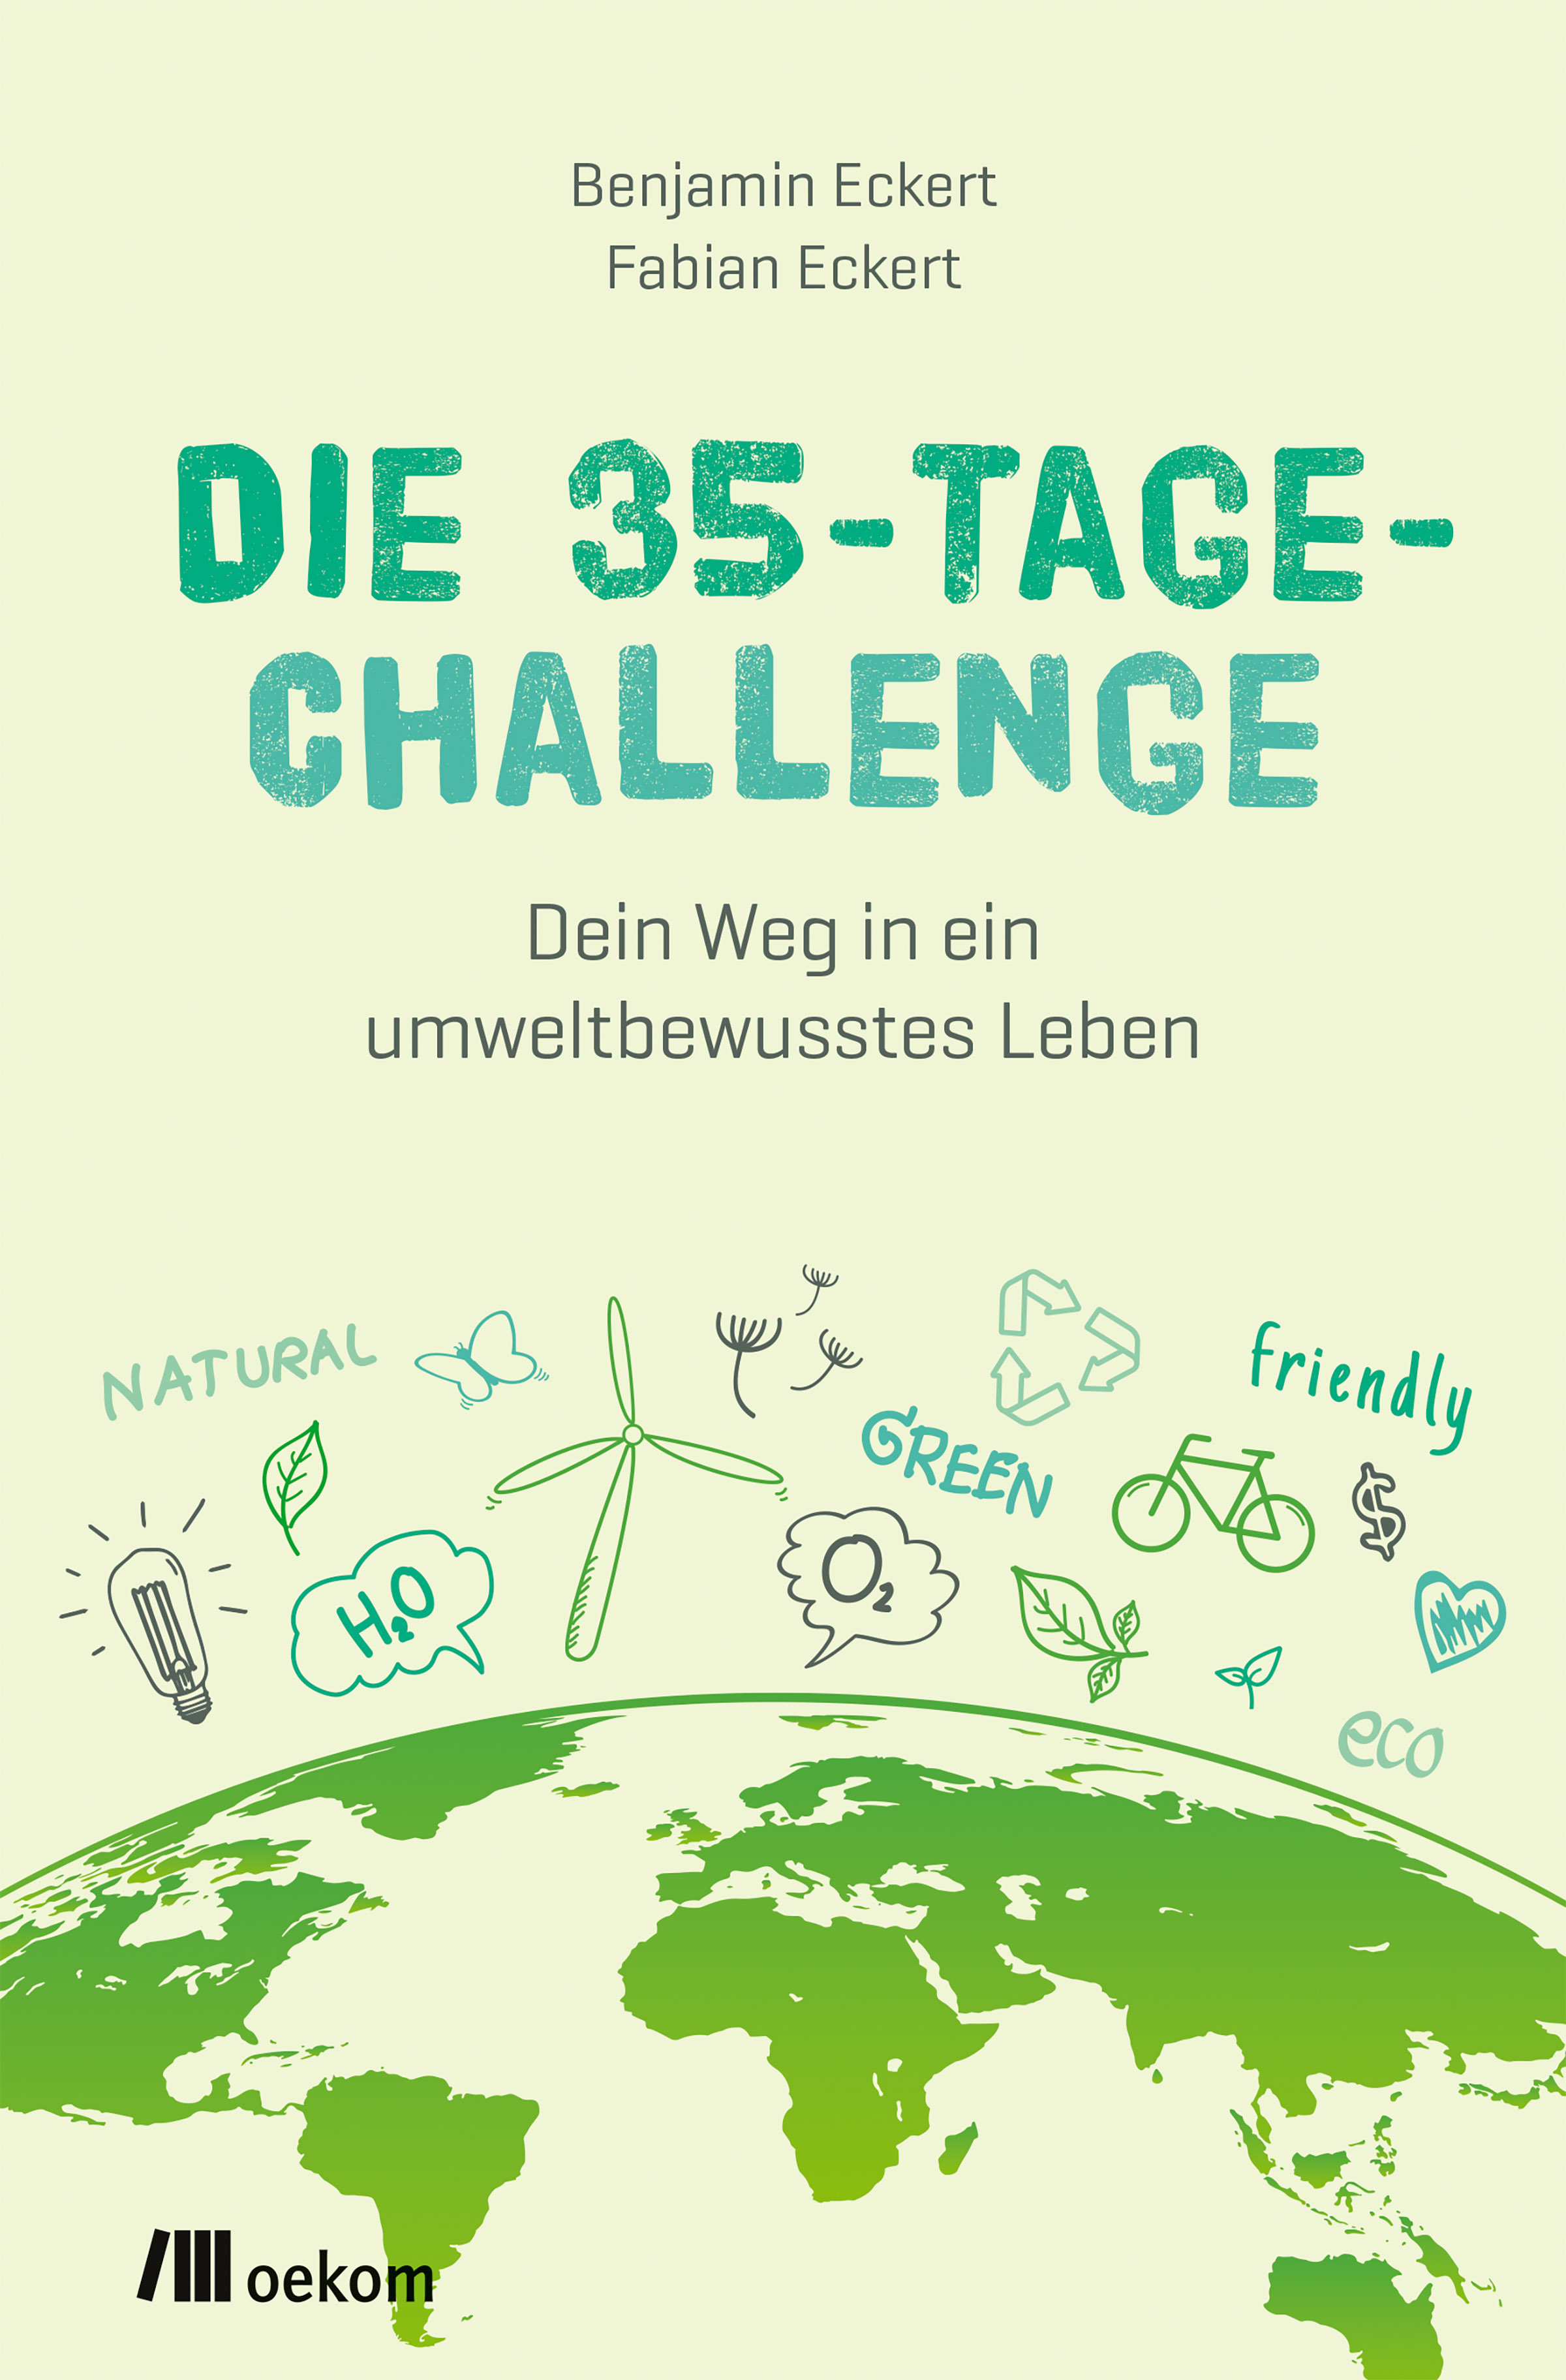 Die 35-Tage-Challenge - Dein Weg in ein umweltbewusstes Leben